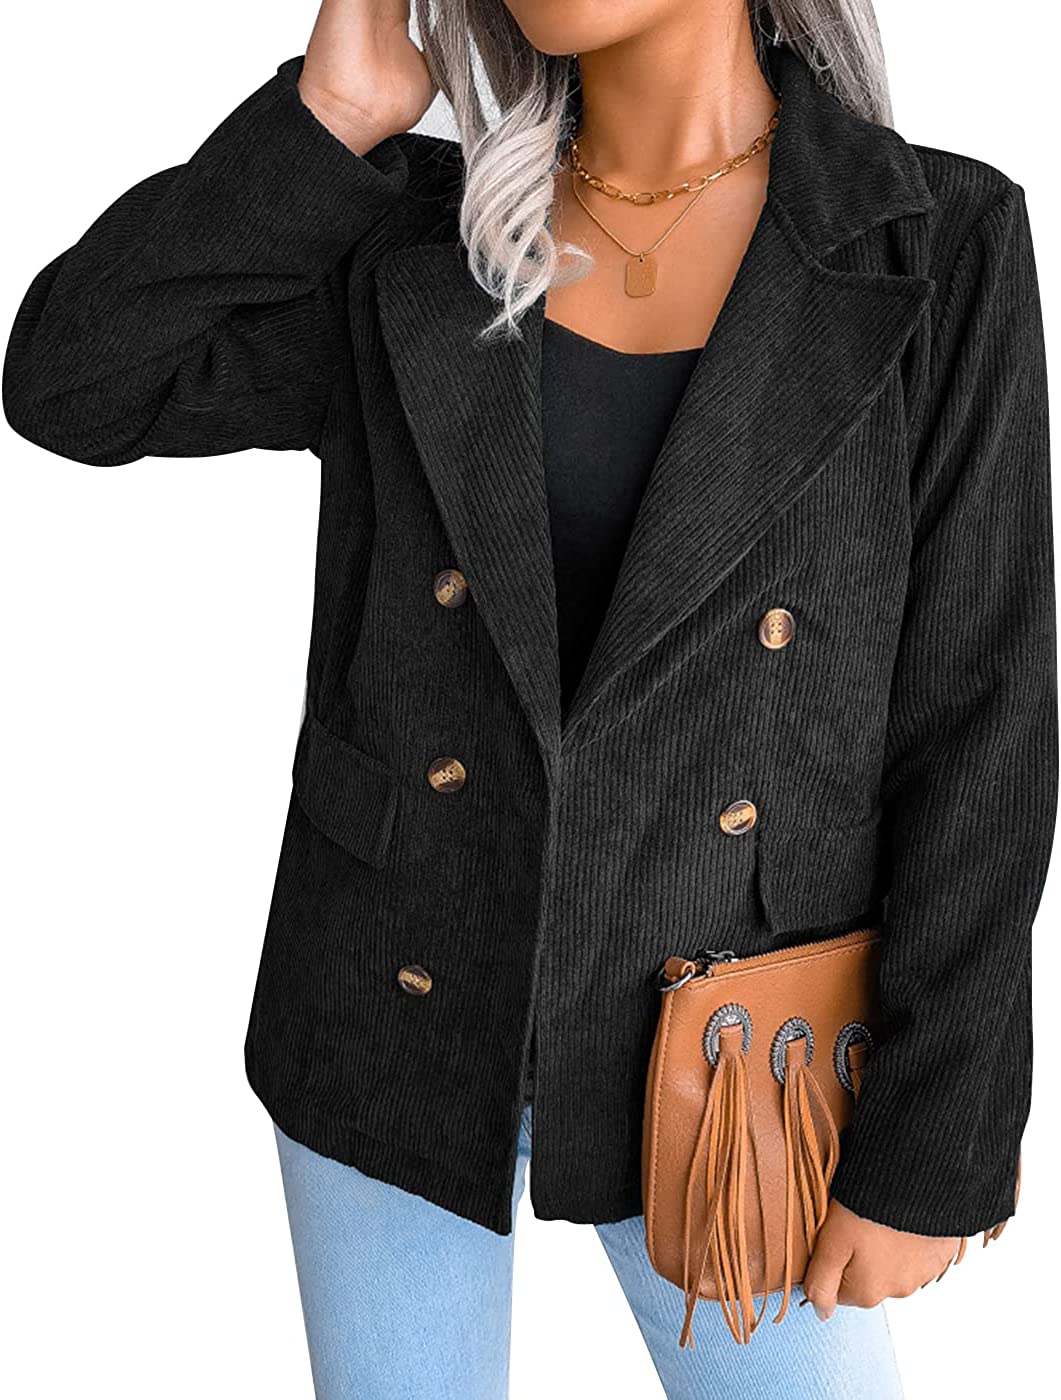 FANVOOK Women's Corduroy Casual Blazer Button Decor Lapel Down Jacket Open Front Jacket Coat 